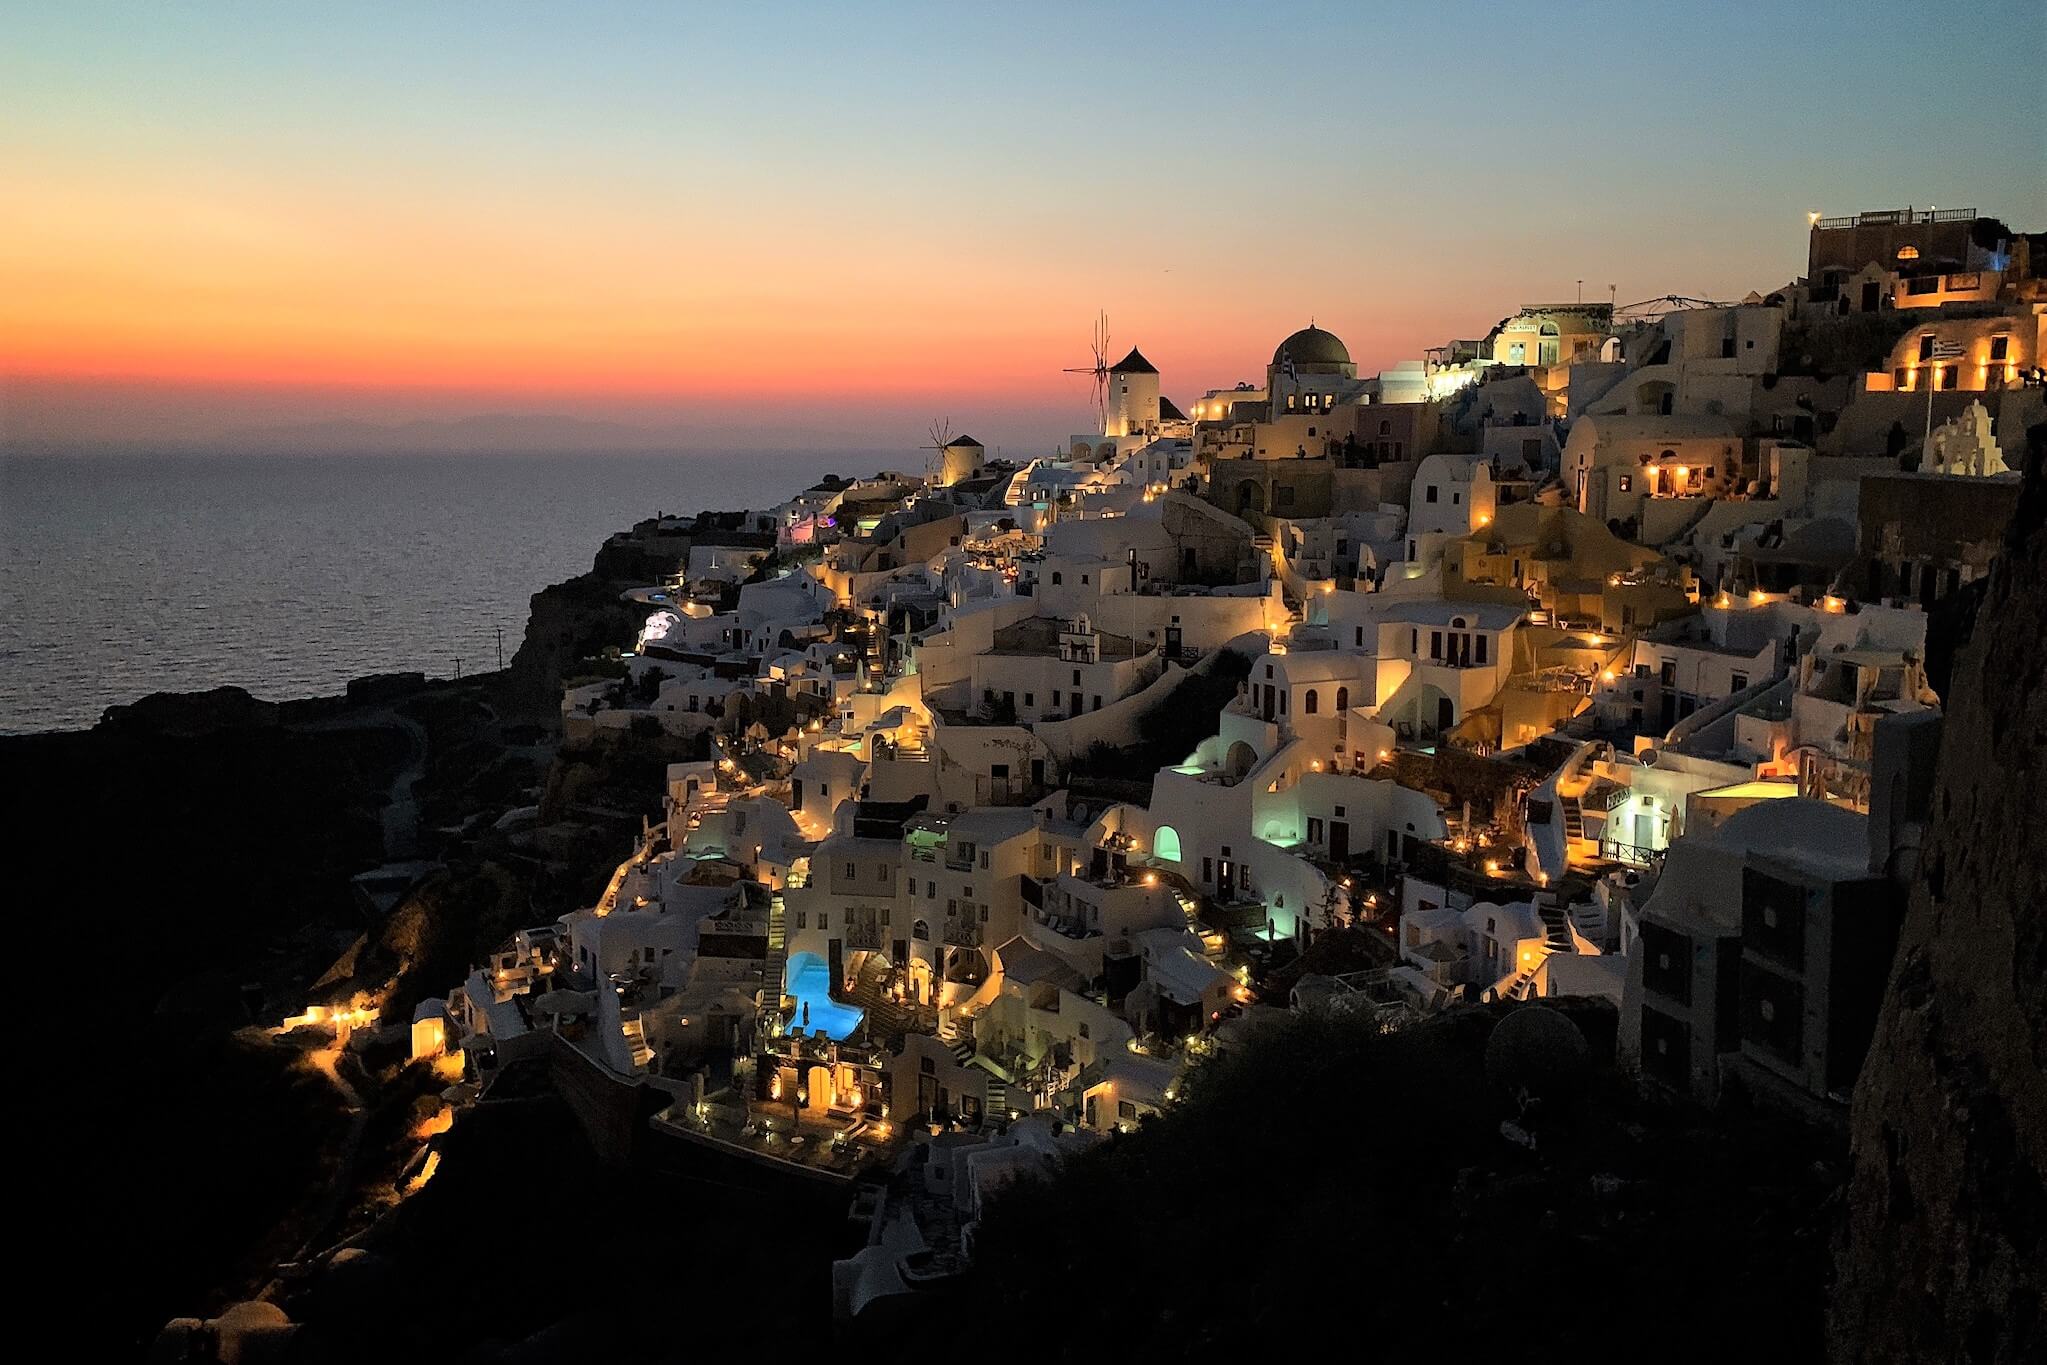 GREECE REVIEW|ギリシャ お客様の声